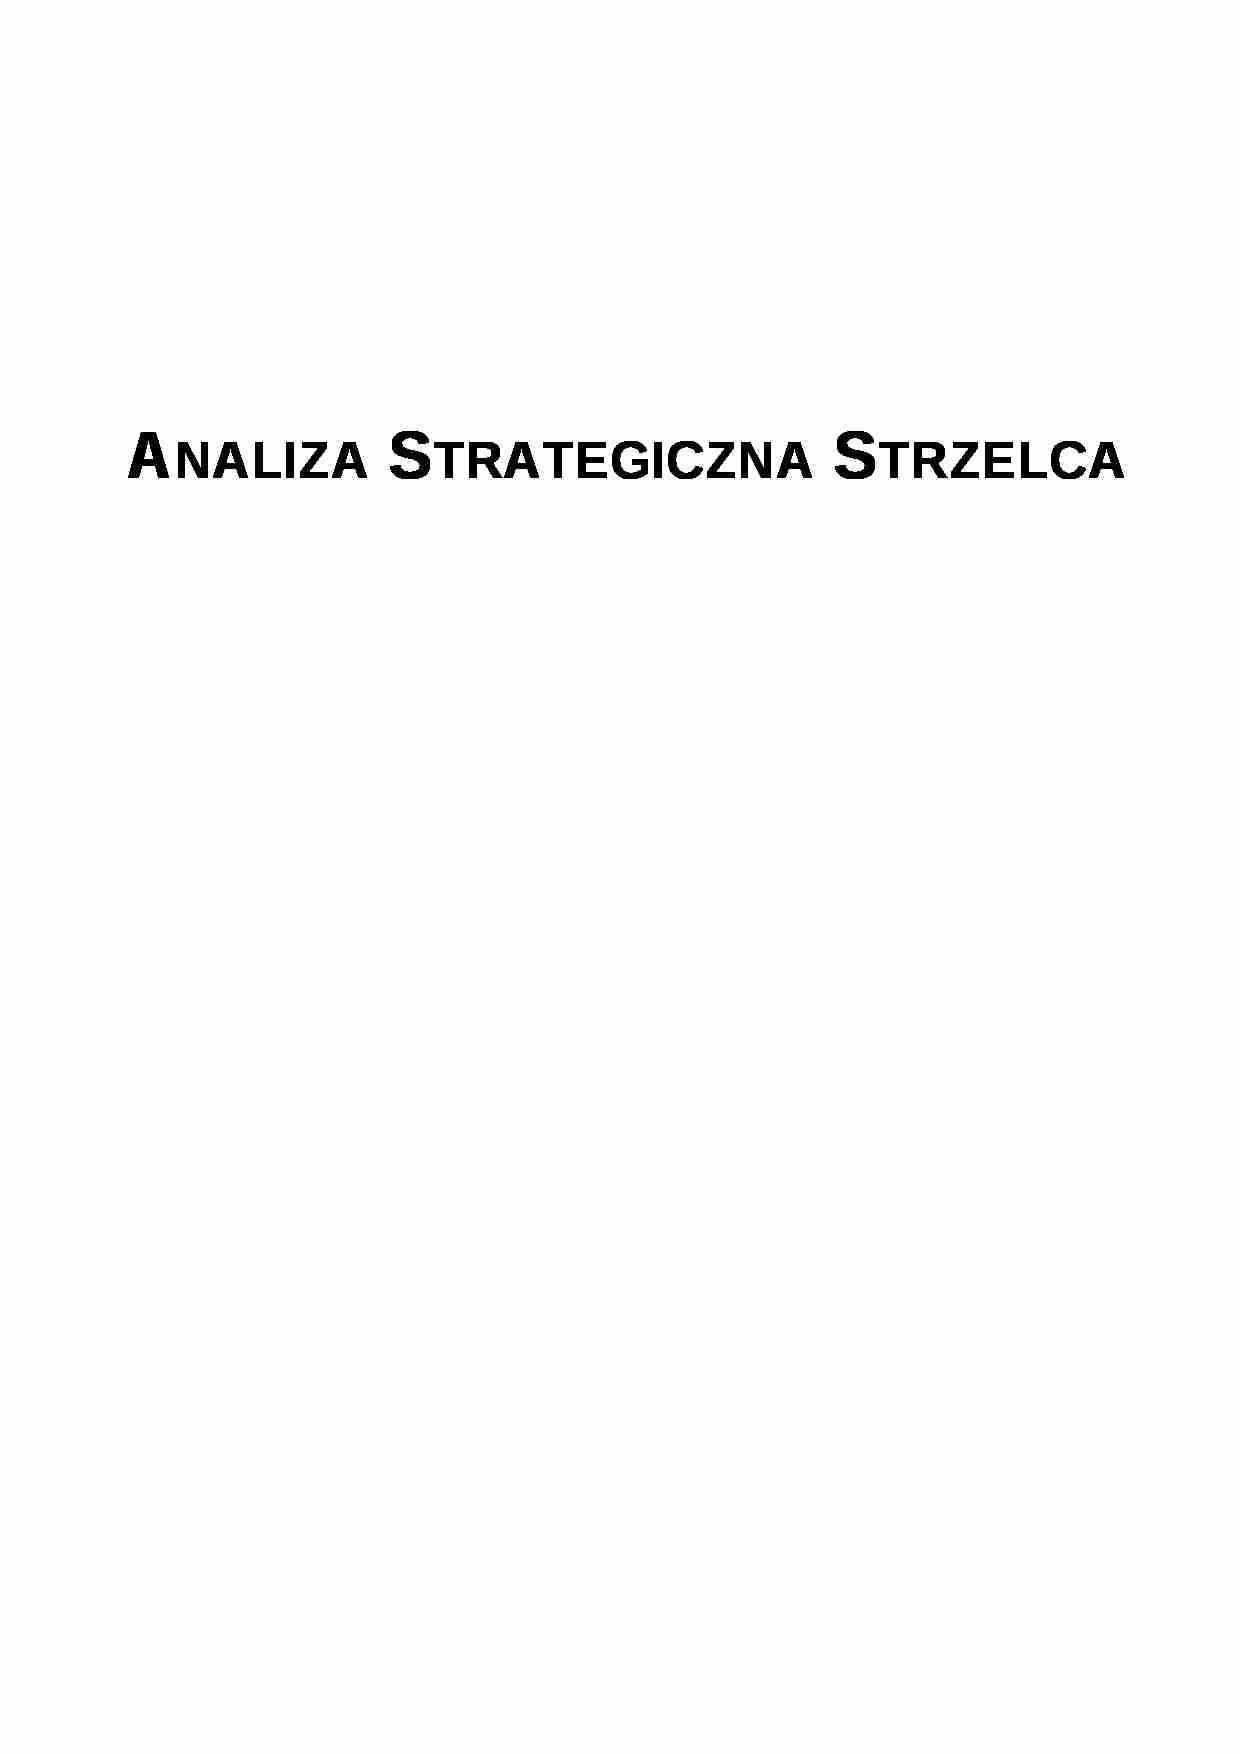 Analiza strategiczna  - browar - Piwo - strona 1